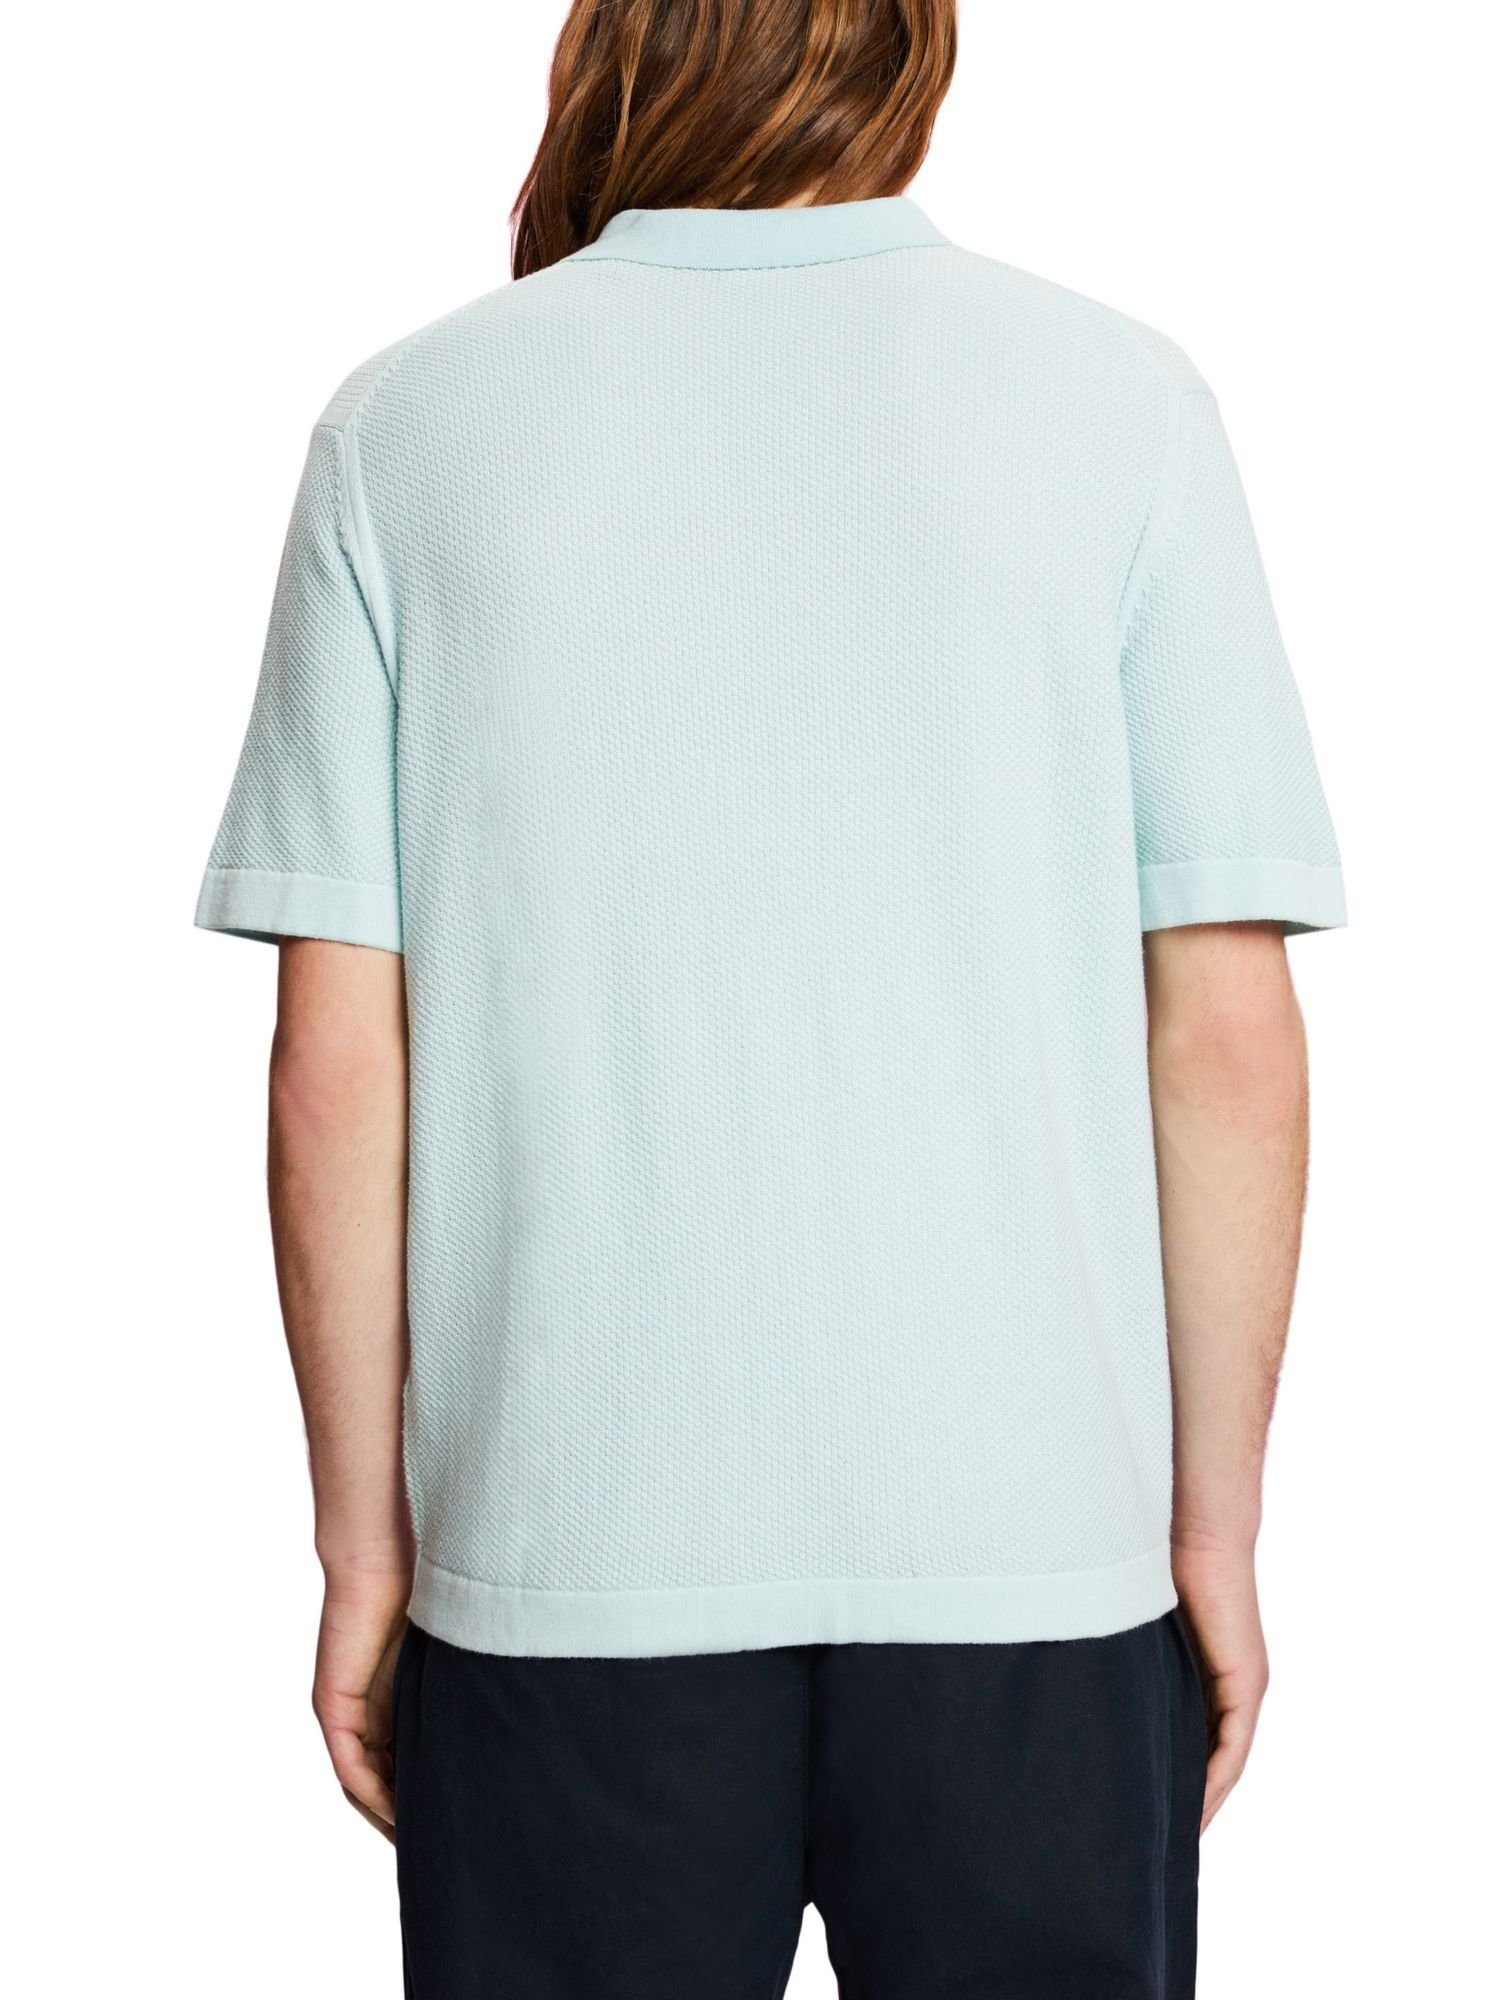 GREEN kurzem Polohemd mit Poloshirt Collection Reißverschluss Esprit LIGHT Strukturiertes AQUA